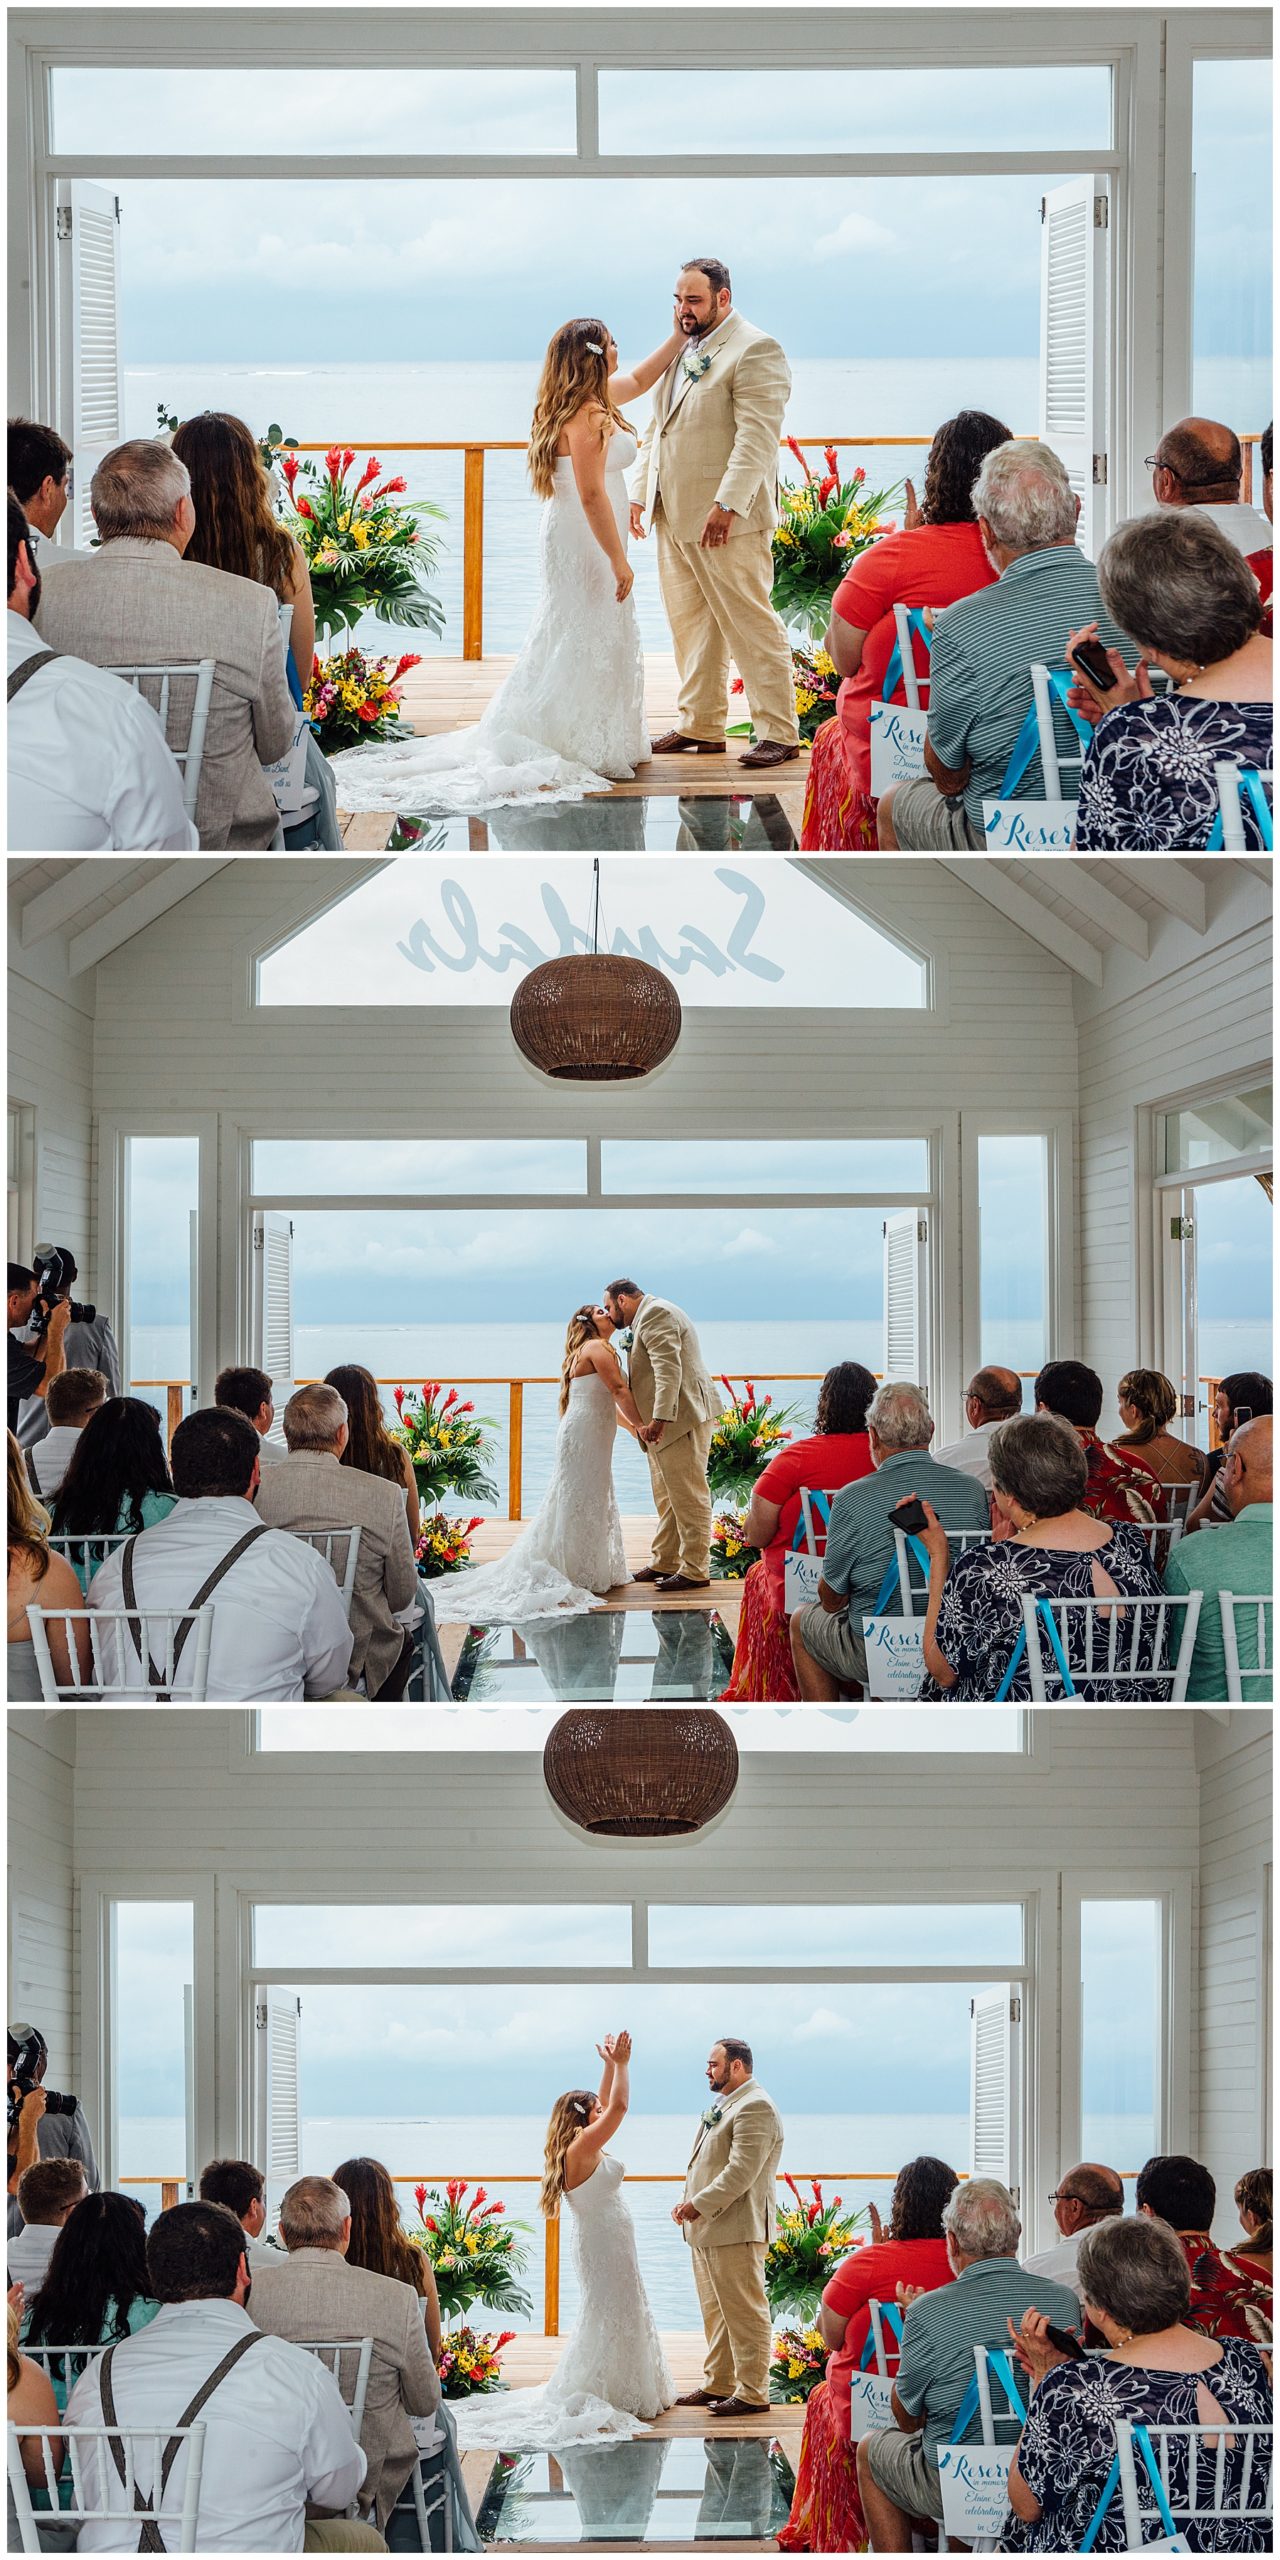 First Kiss Jamaica wedding at Sandals resort